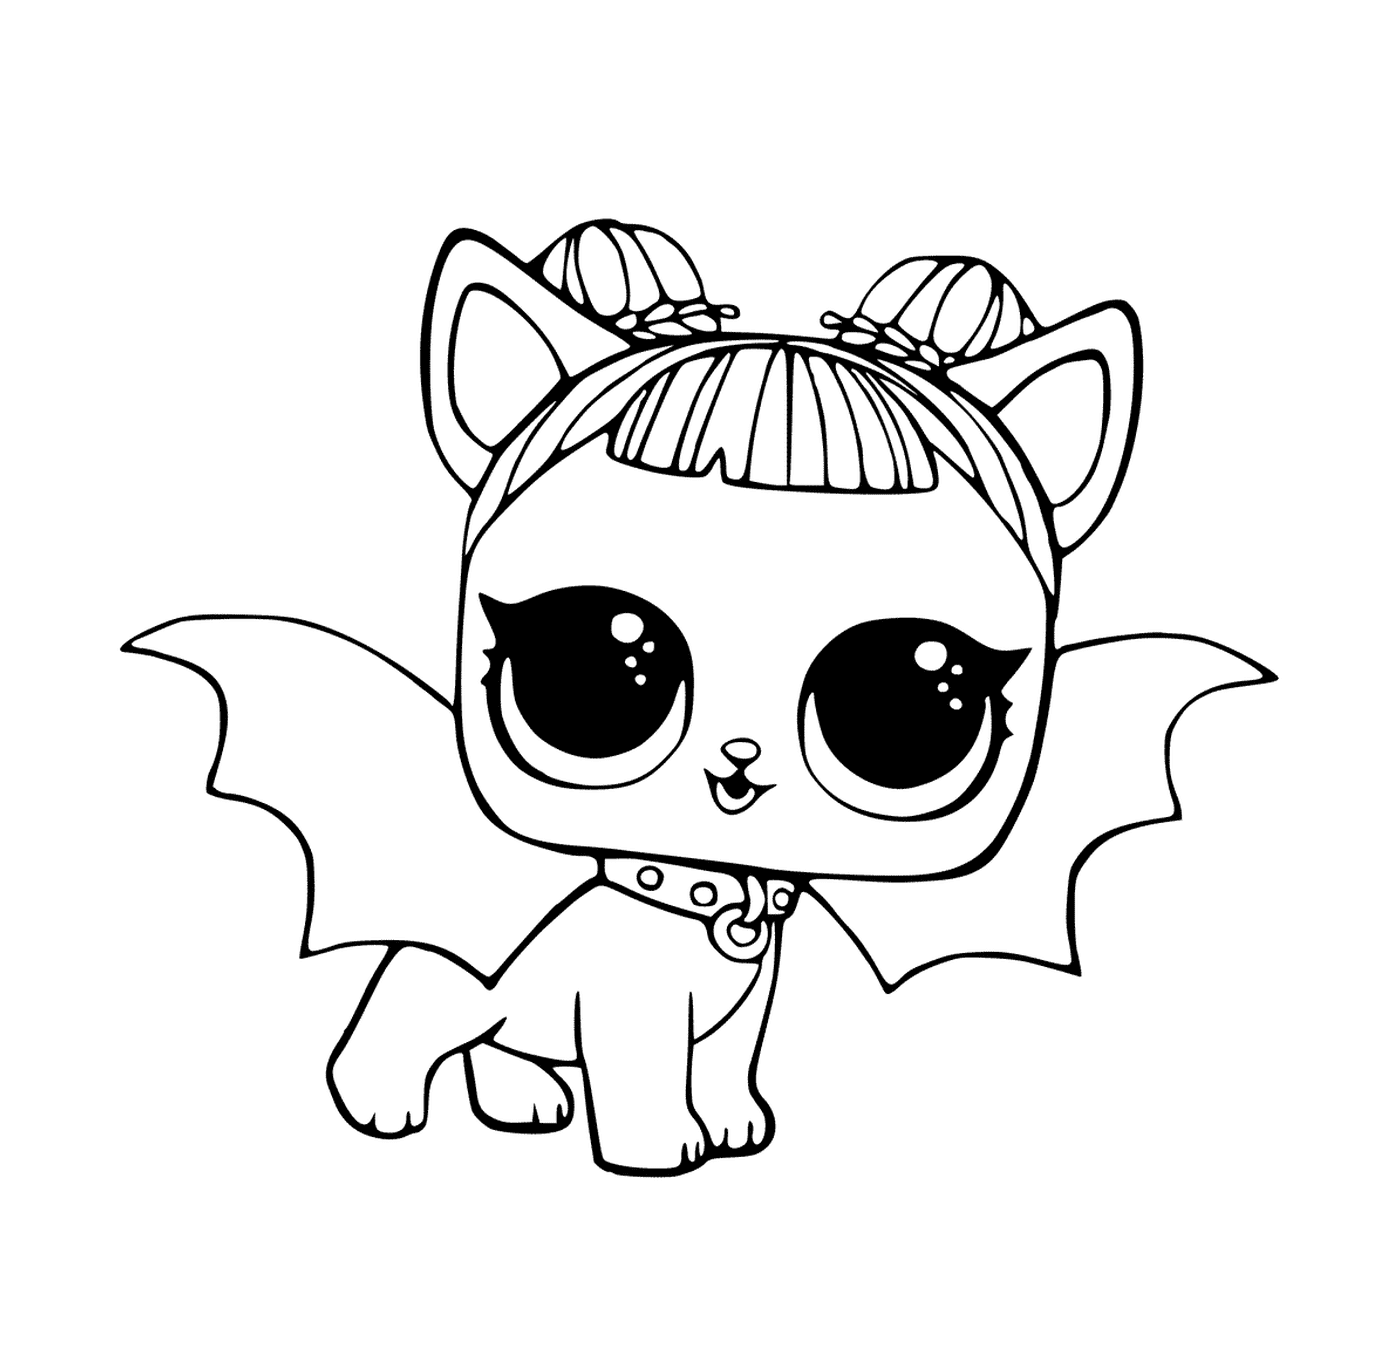  Gato con traje de murciélago 